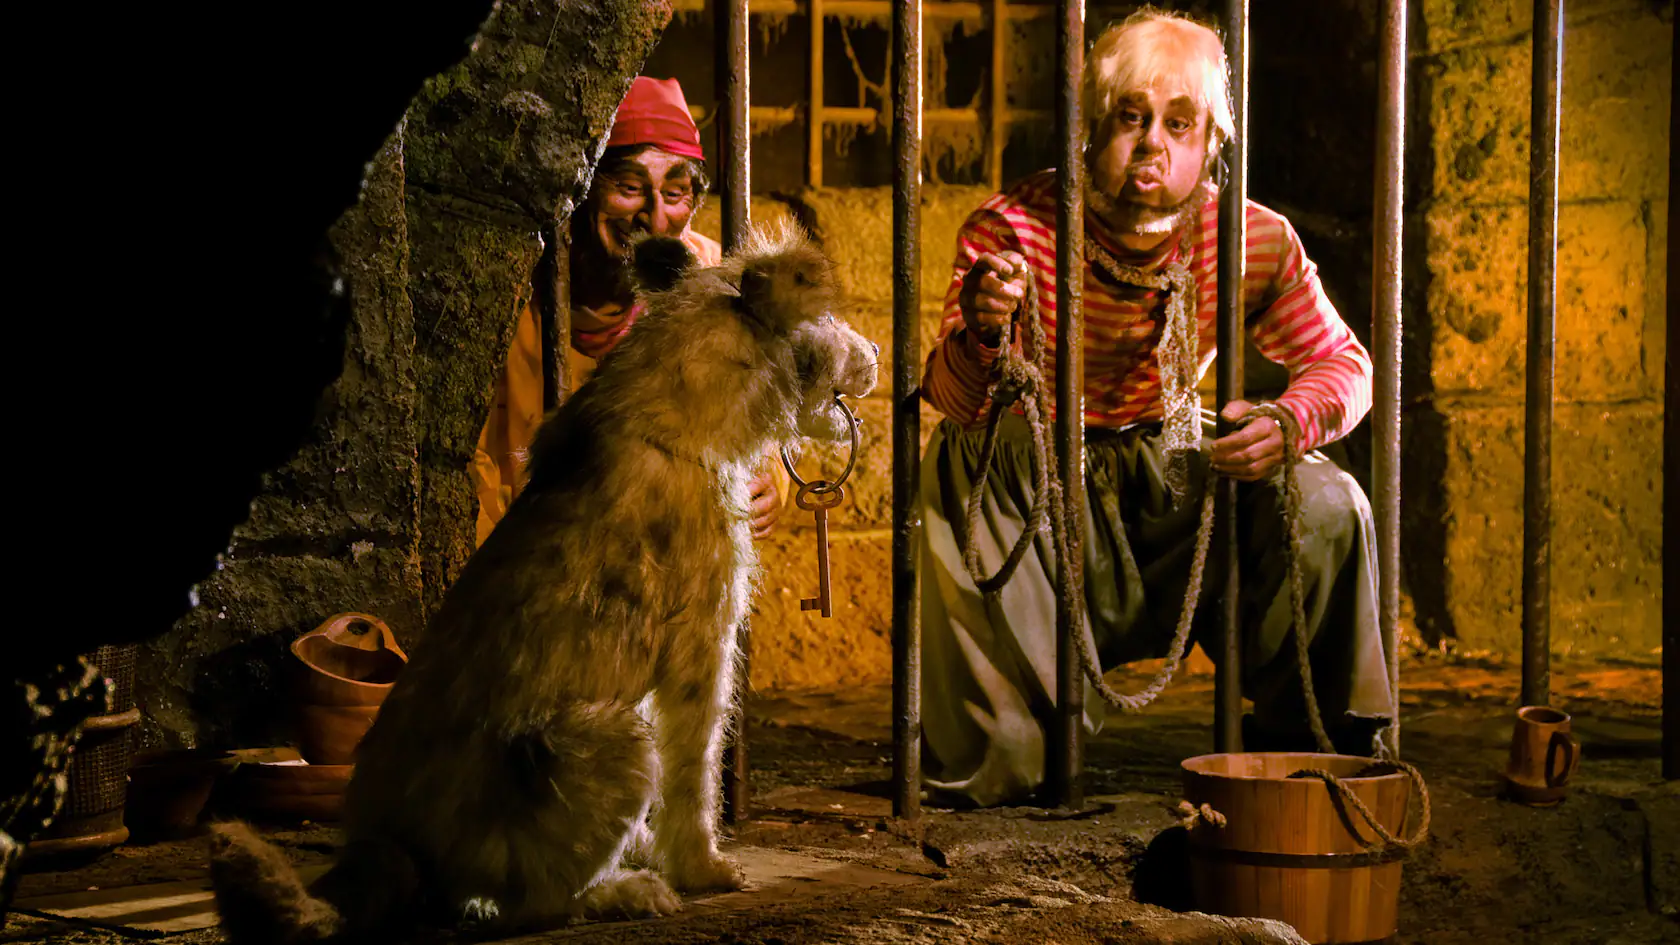 Dans un décor rustique et faiblement éclairé, deux artistes déguisés en pirates interagissent avec un gros chien assis entre eux. L’un tient une corde en souriant et l’autre regarde.